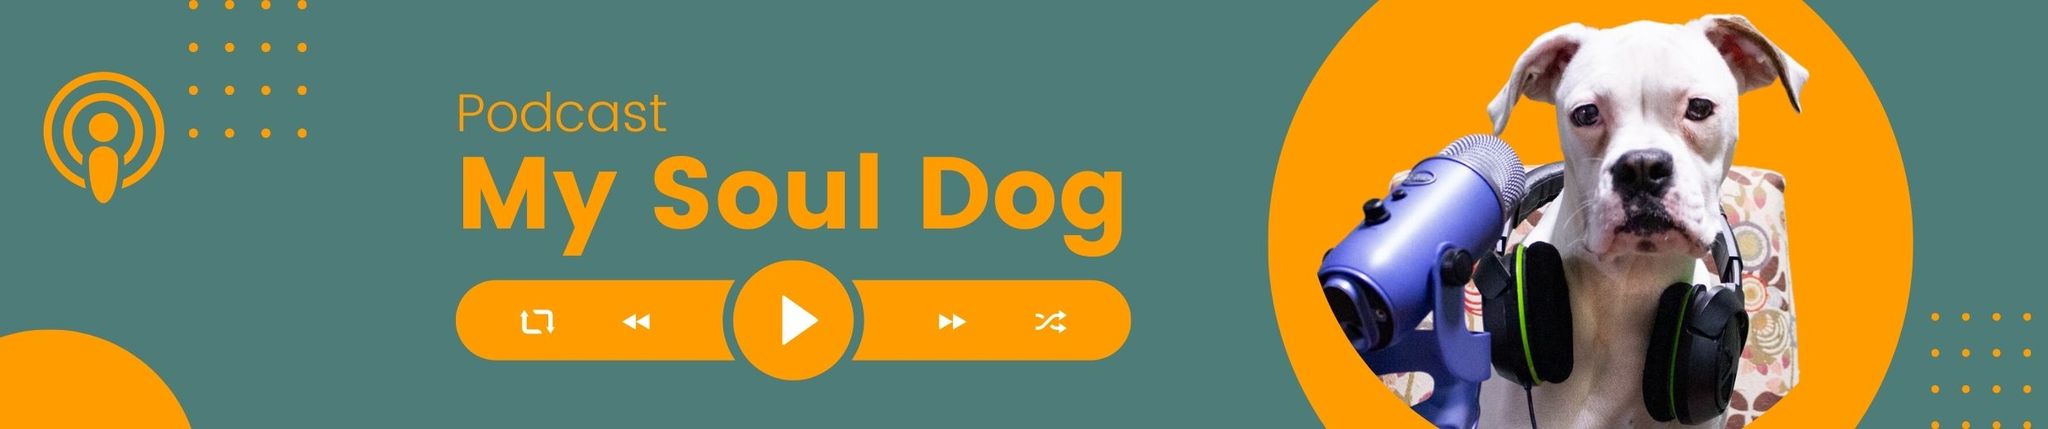 Podcast - My Soul Dog